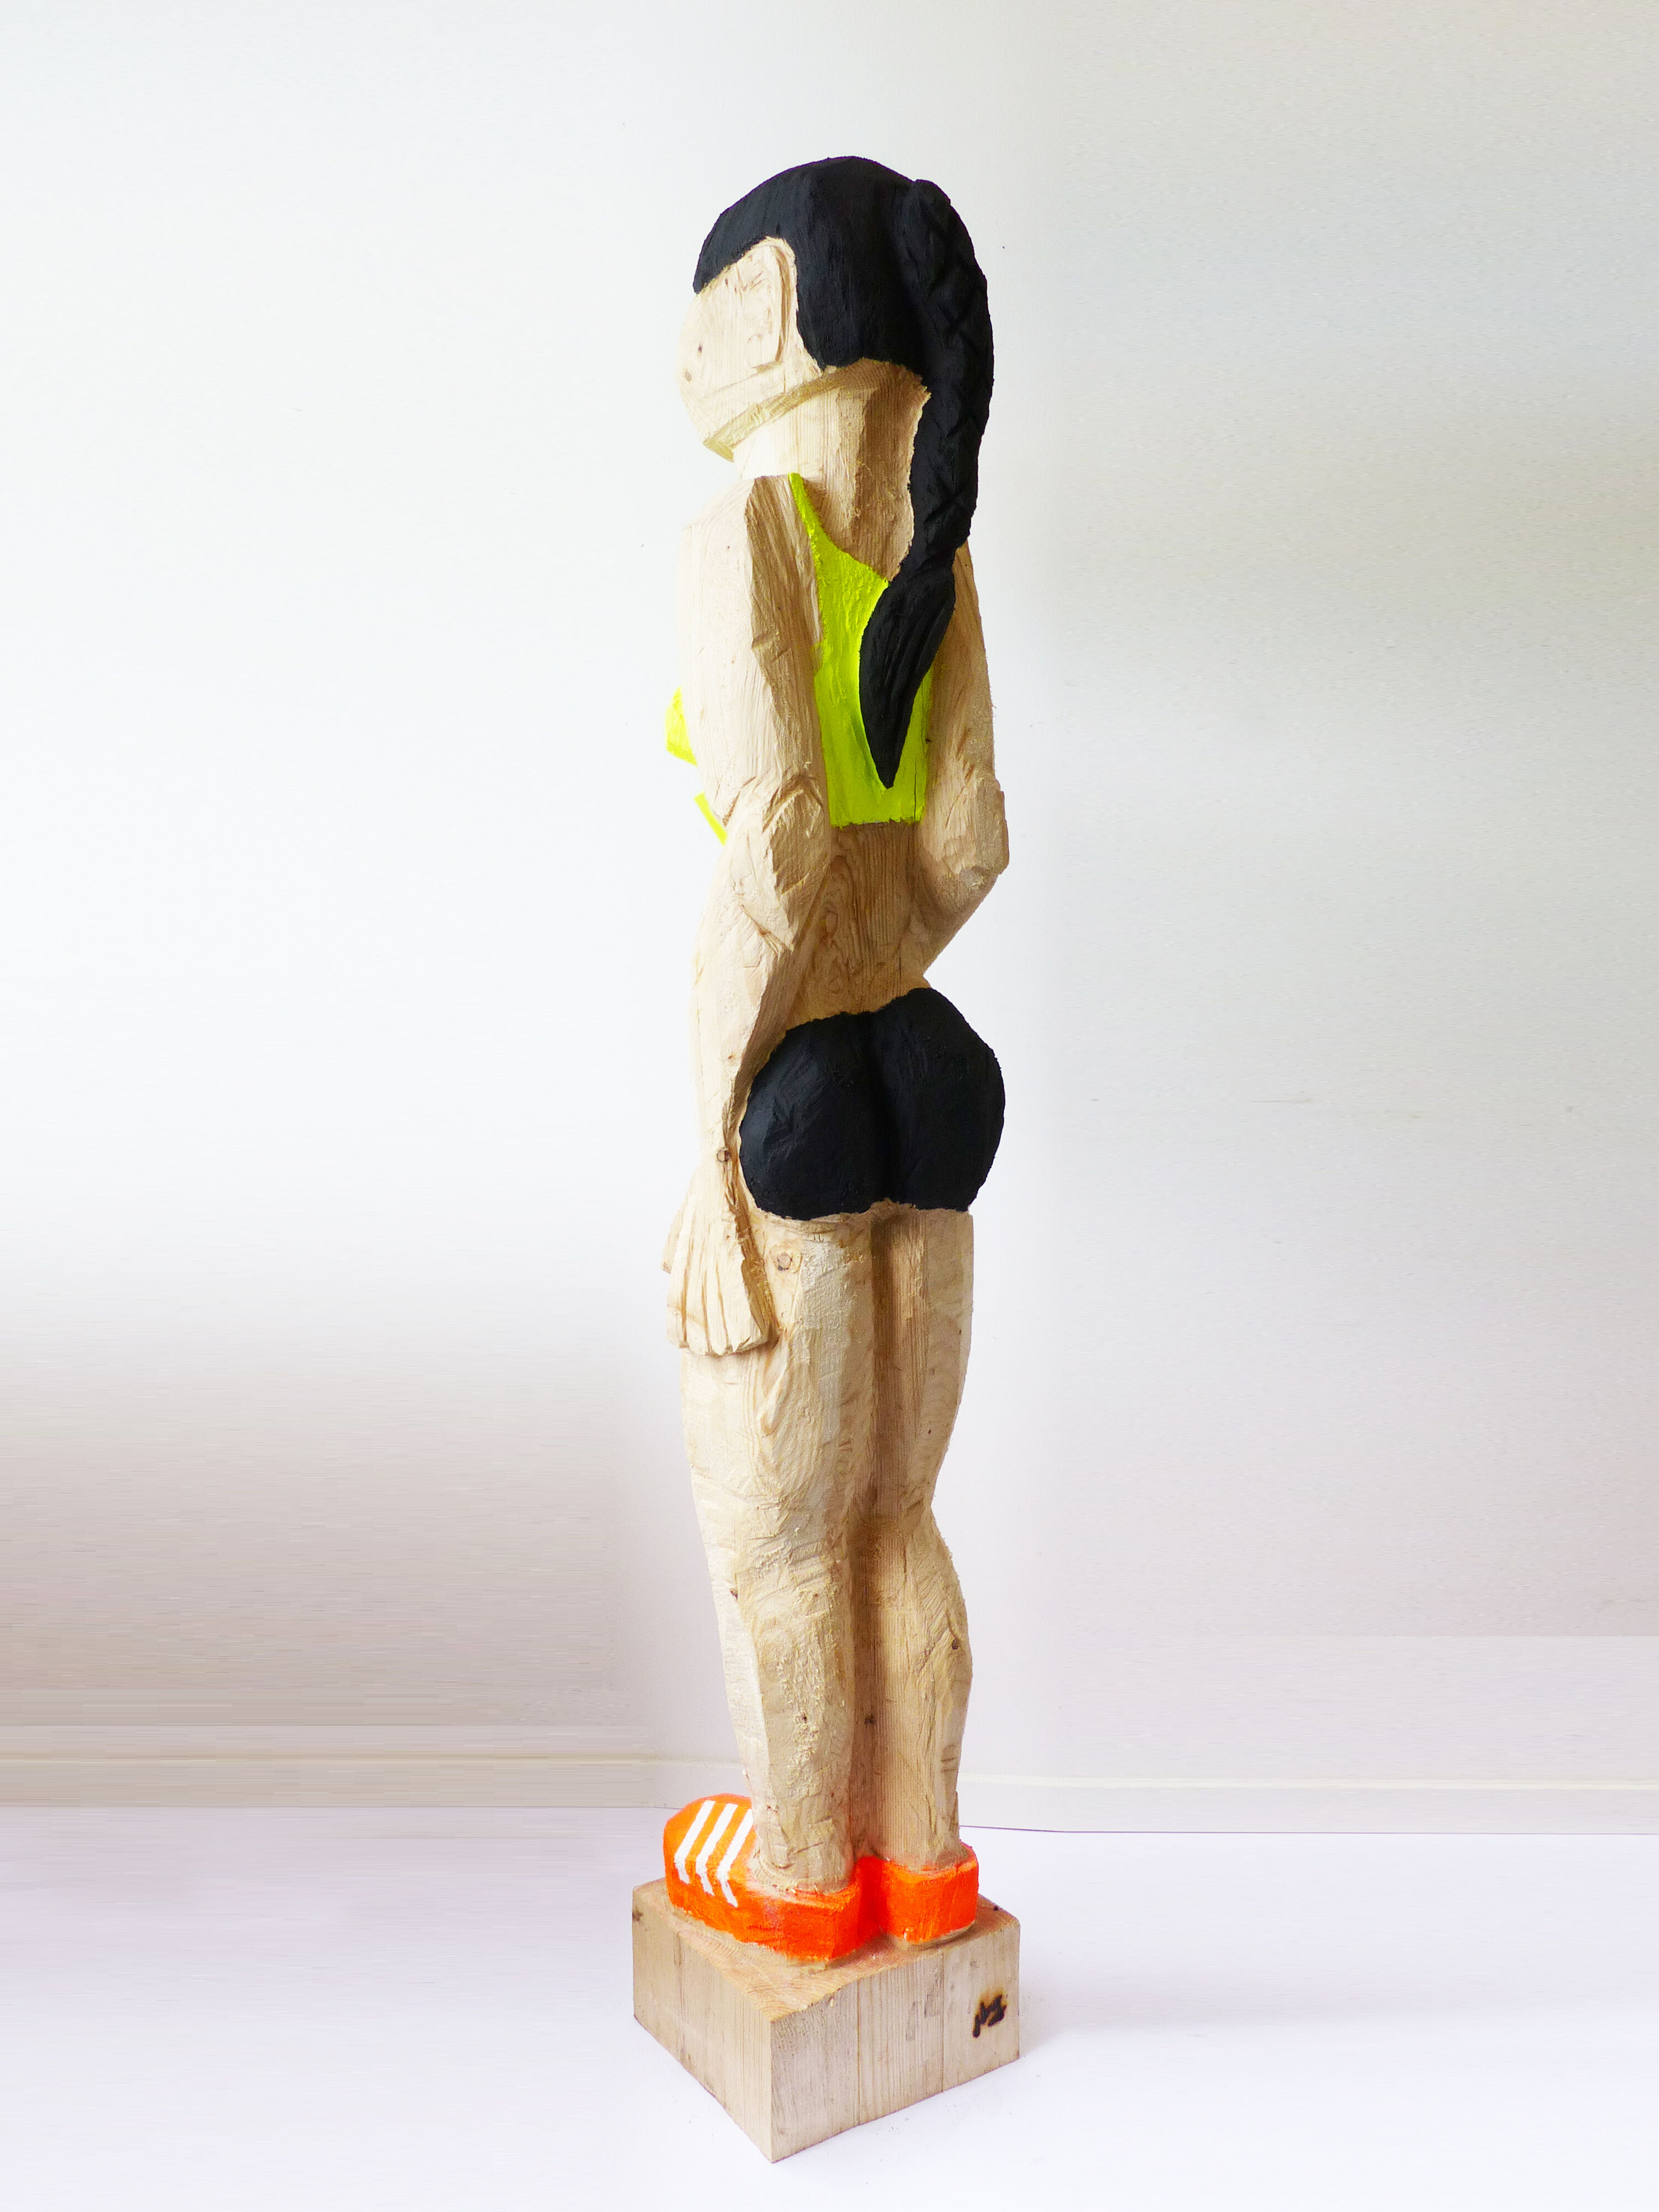 Sculpture "Relay runner" (2022)